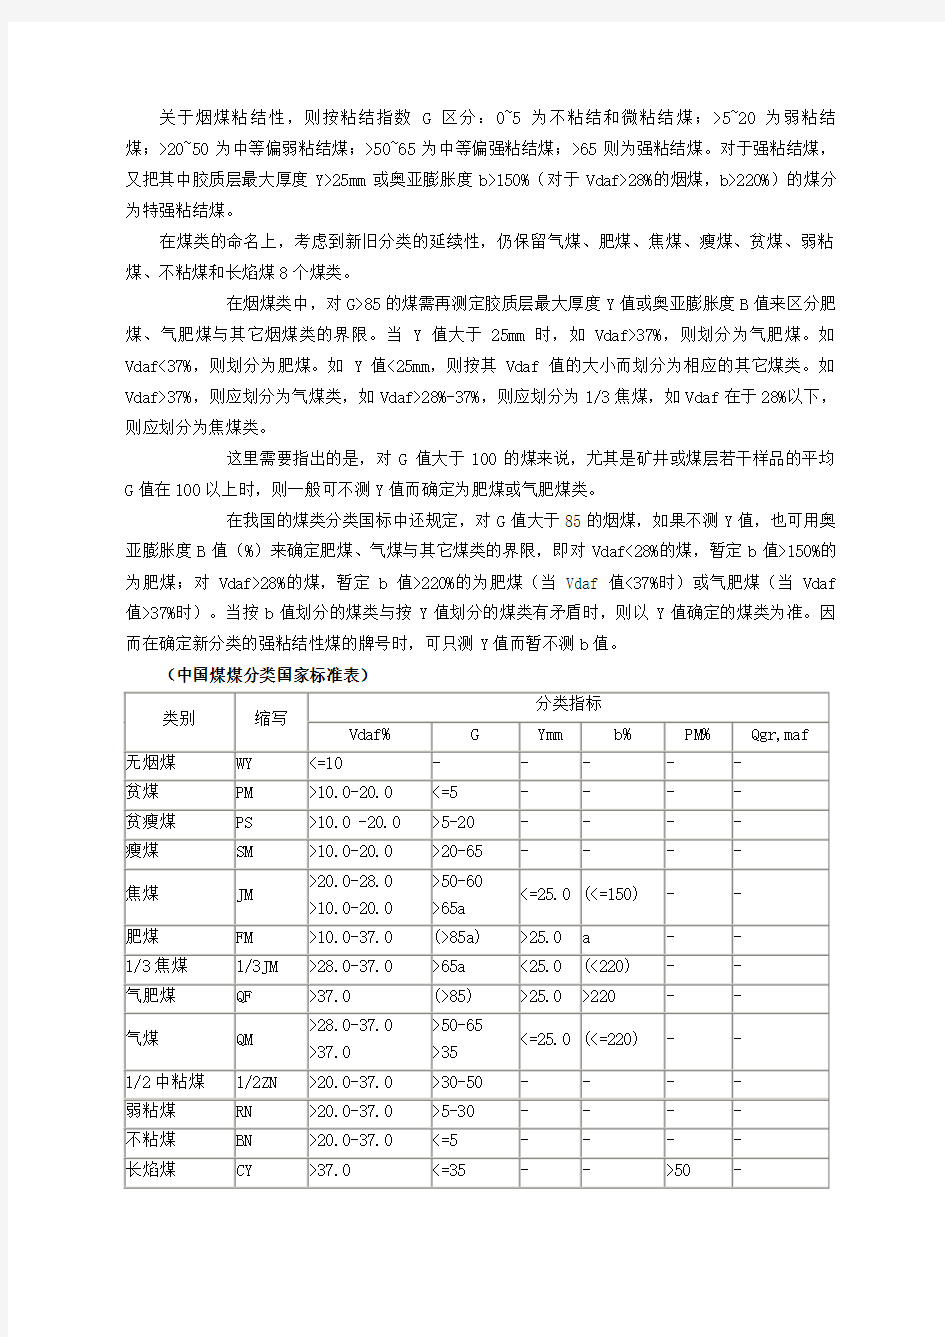 中国煤炭分类煤质指标的分级